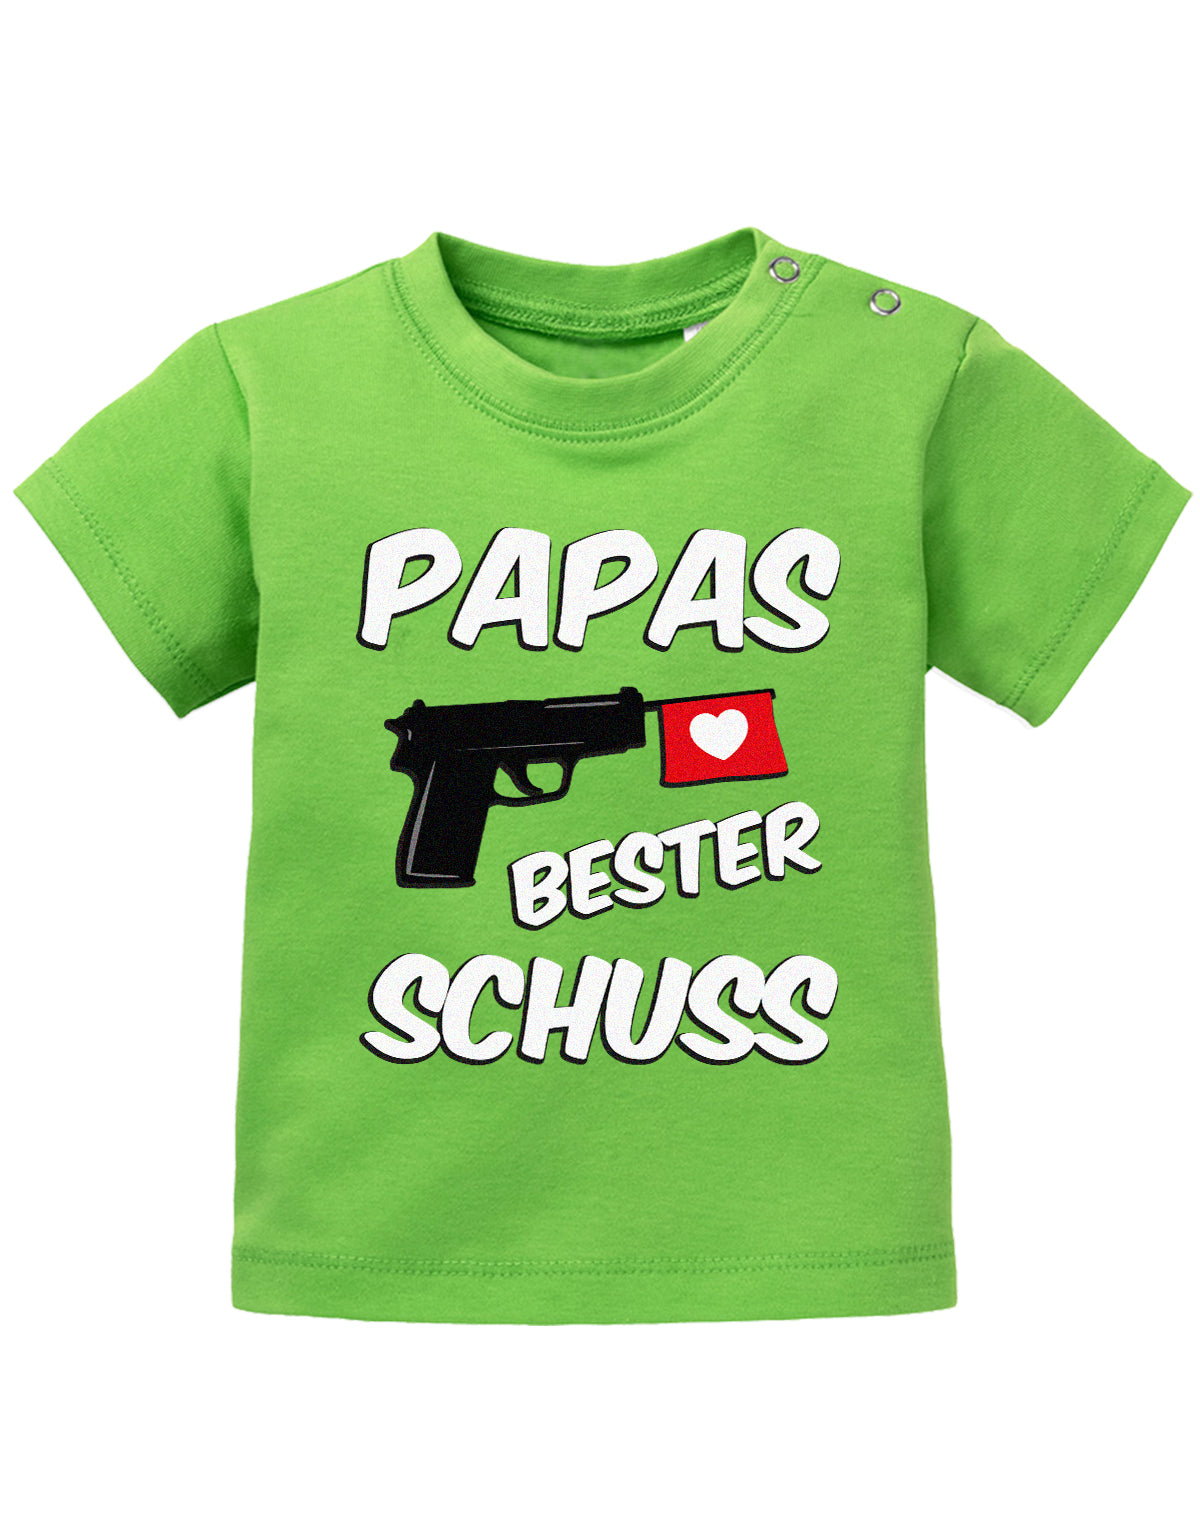 Lustiges süßes Sprüche Baby Shirt Papas bester Schuss Grün